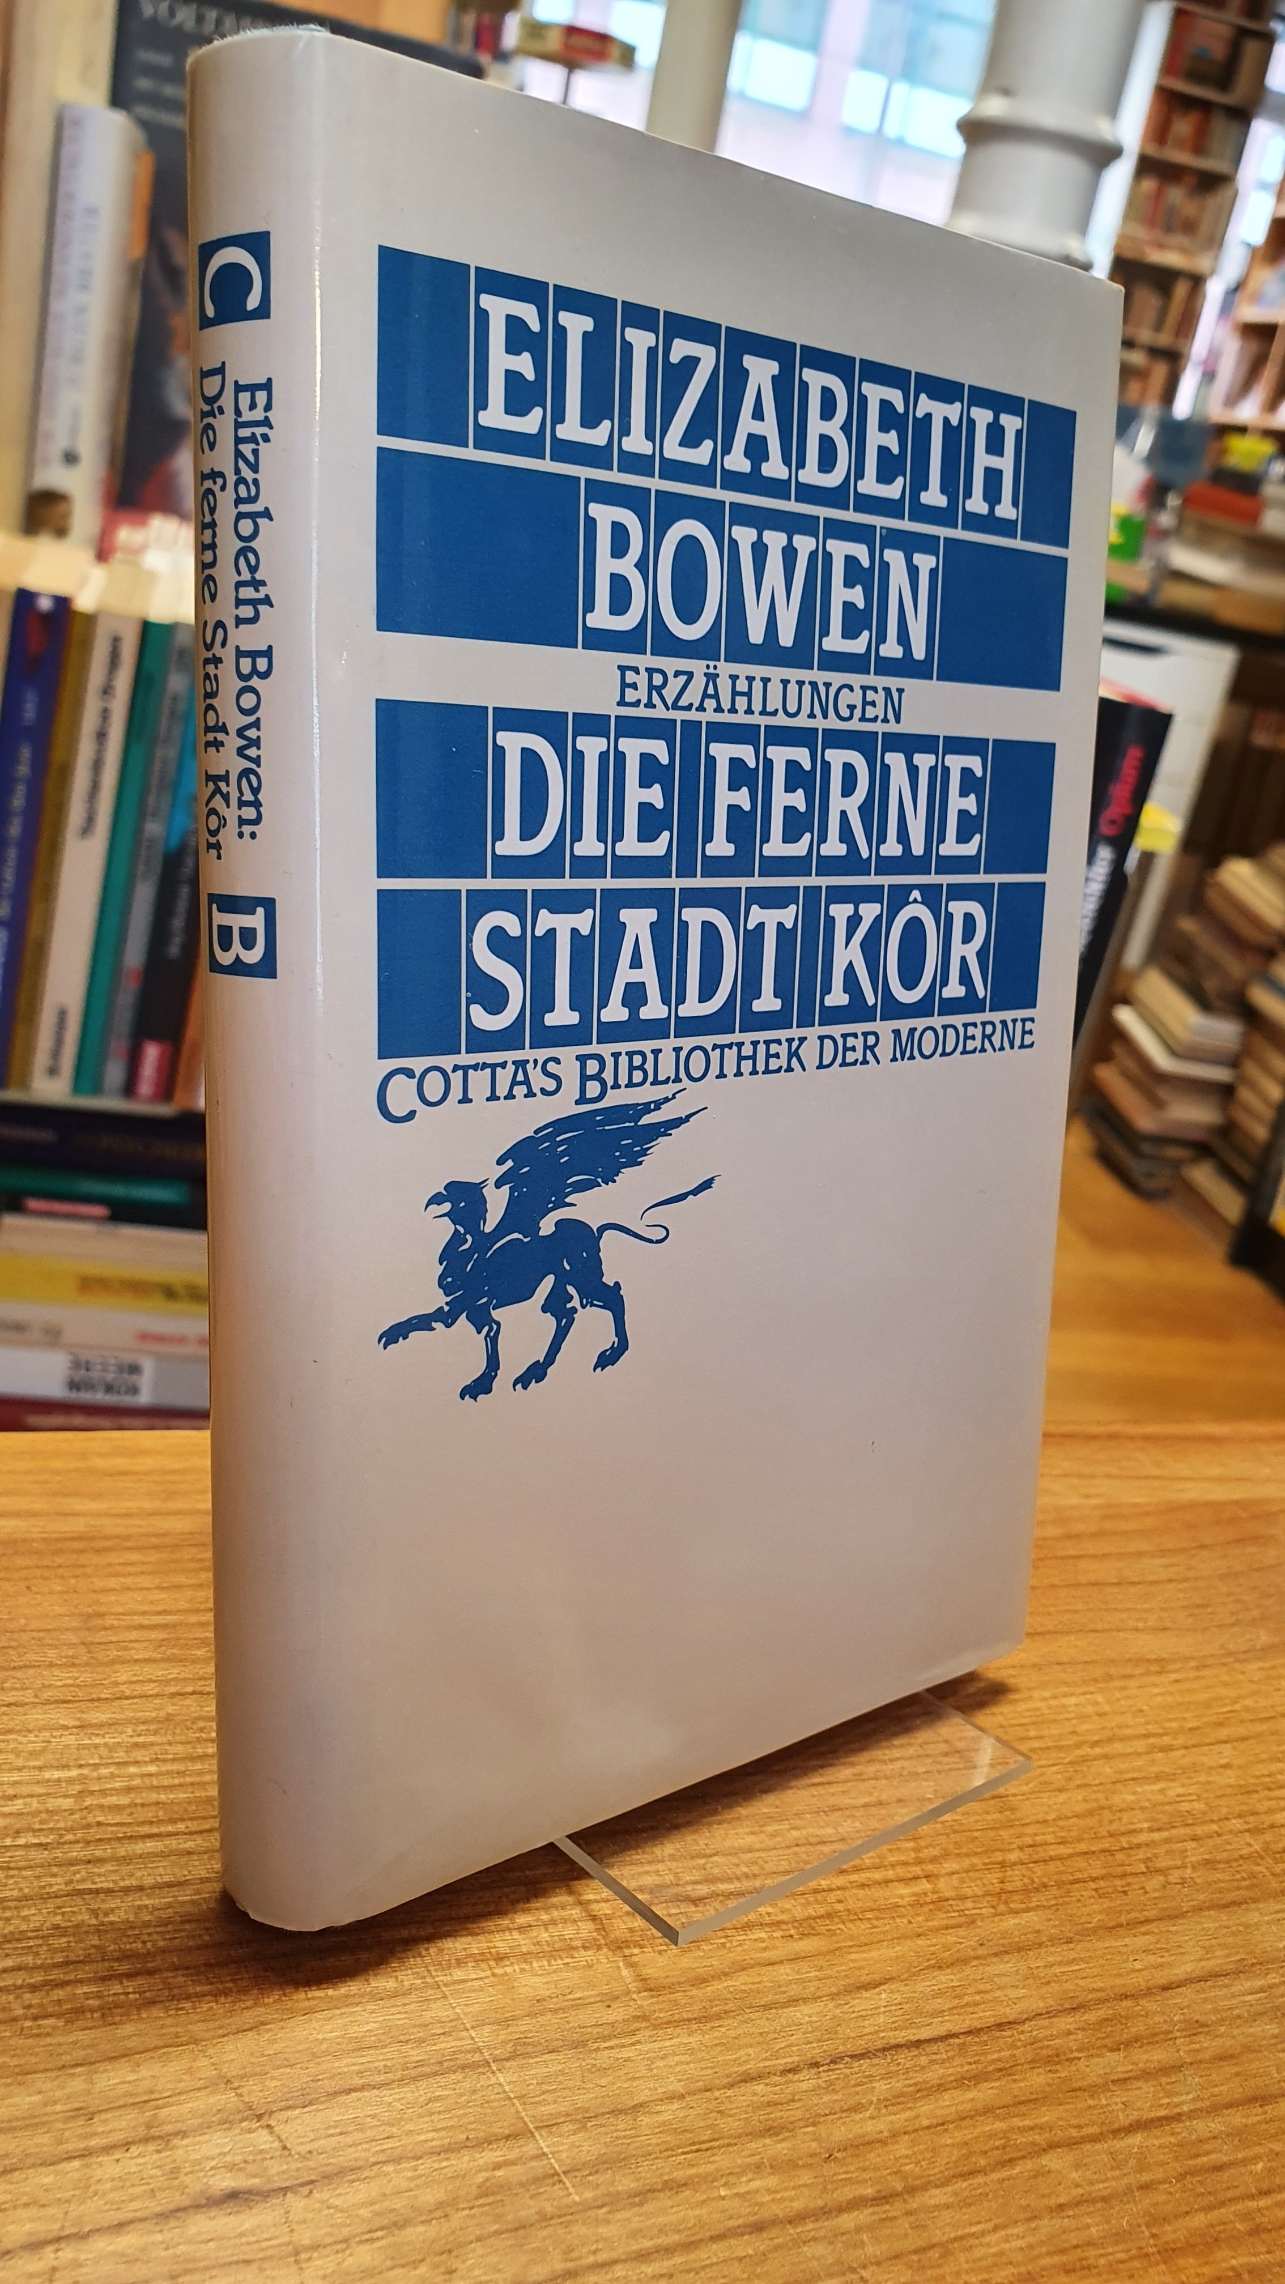 Bowen, Die ferne Stadt Kôr – Erzählungen,